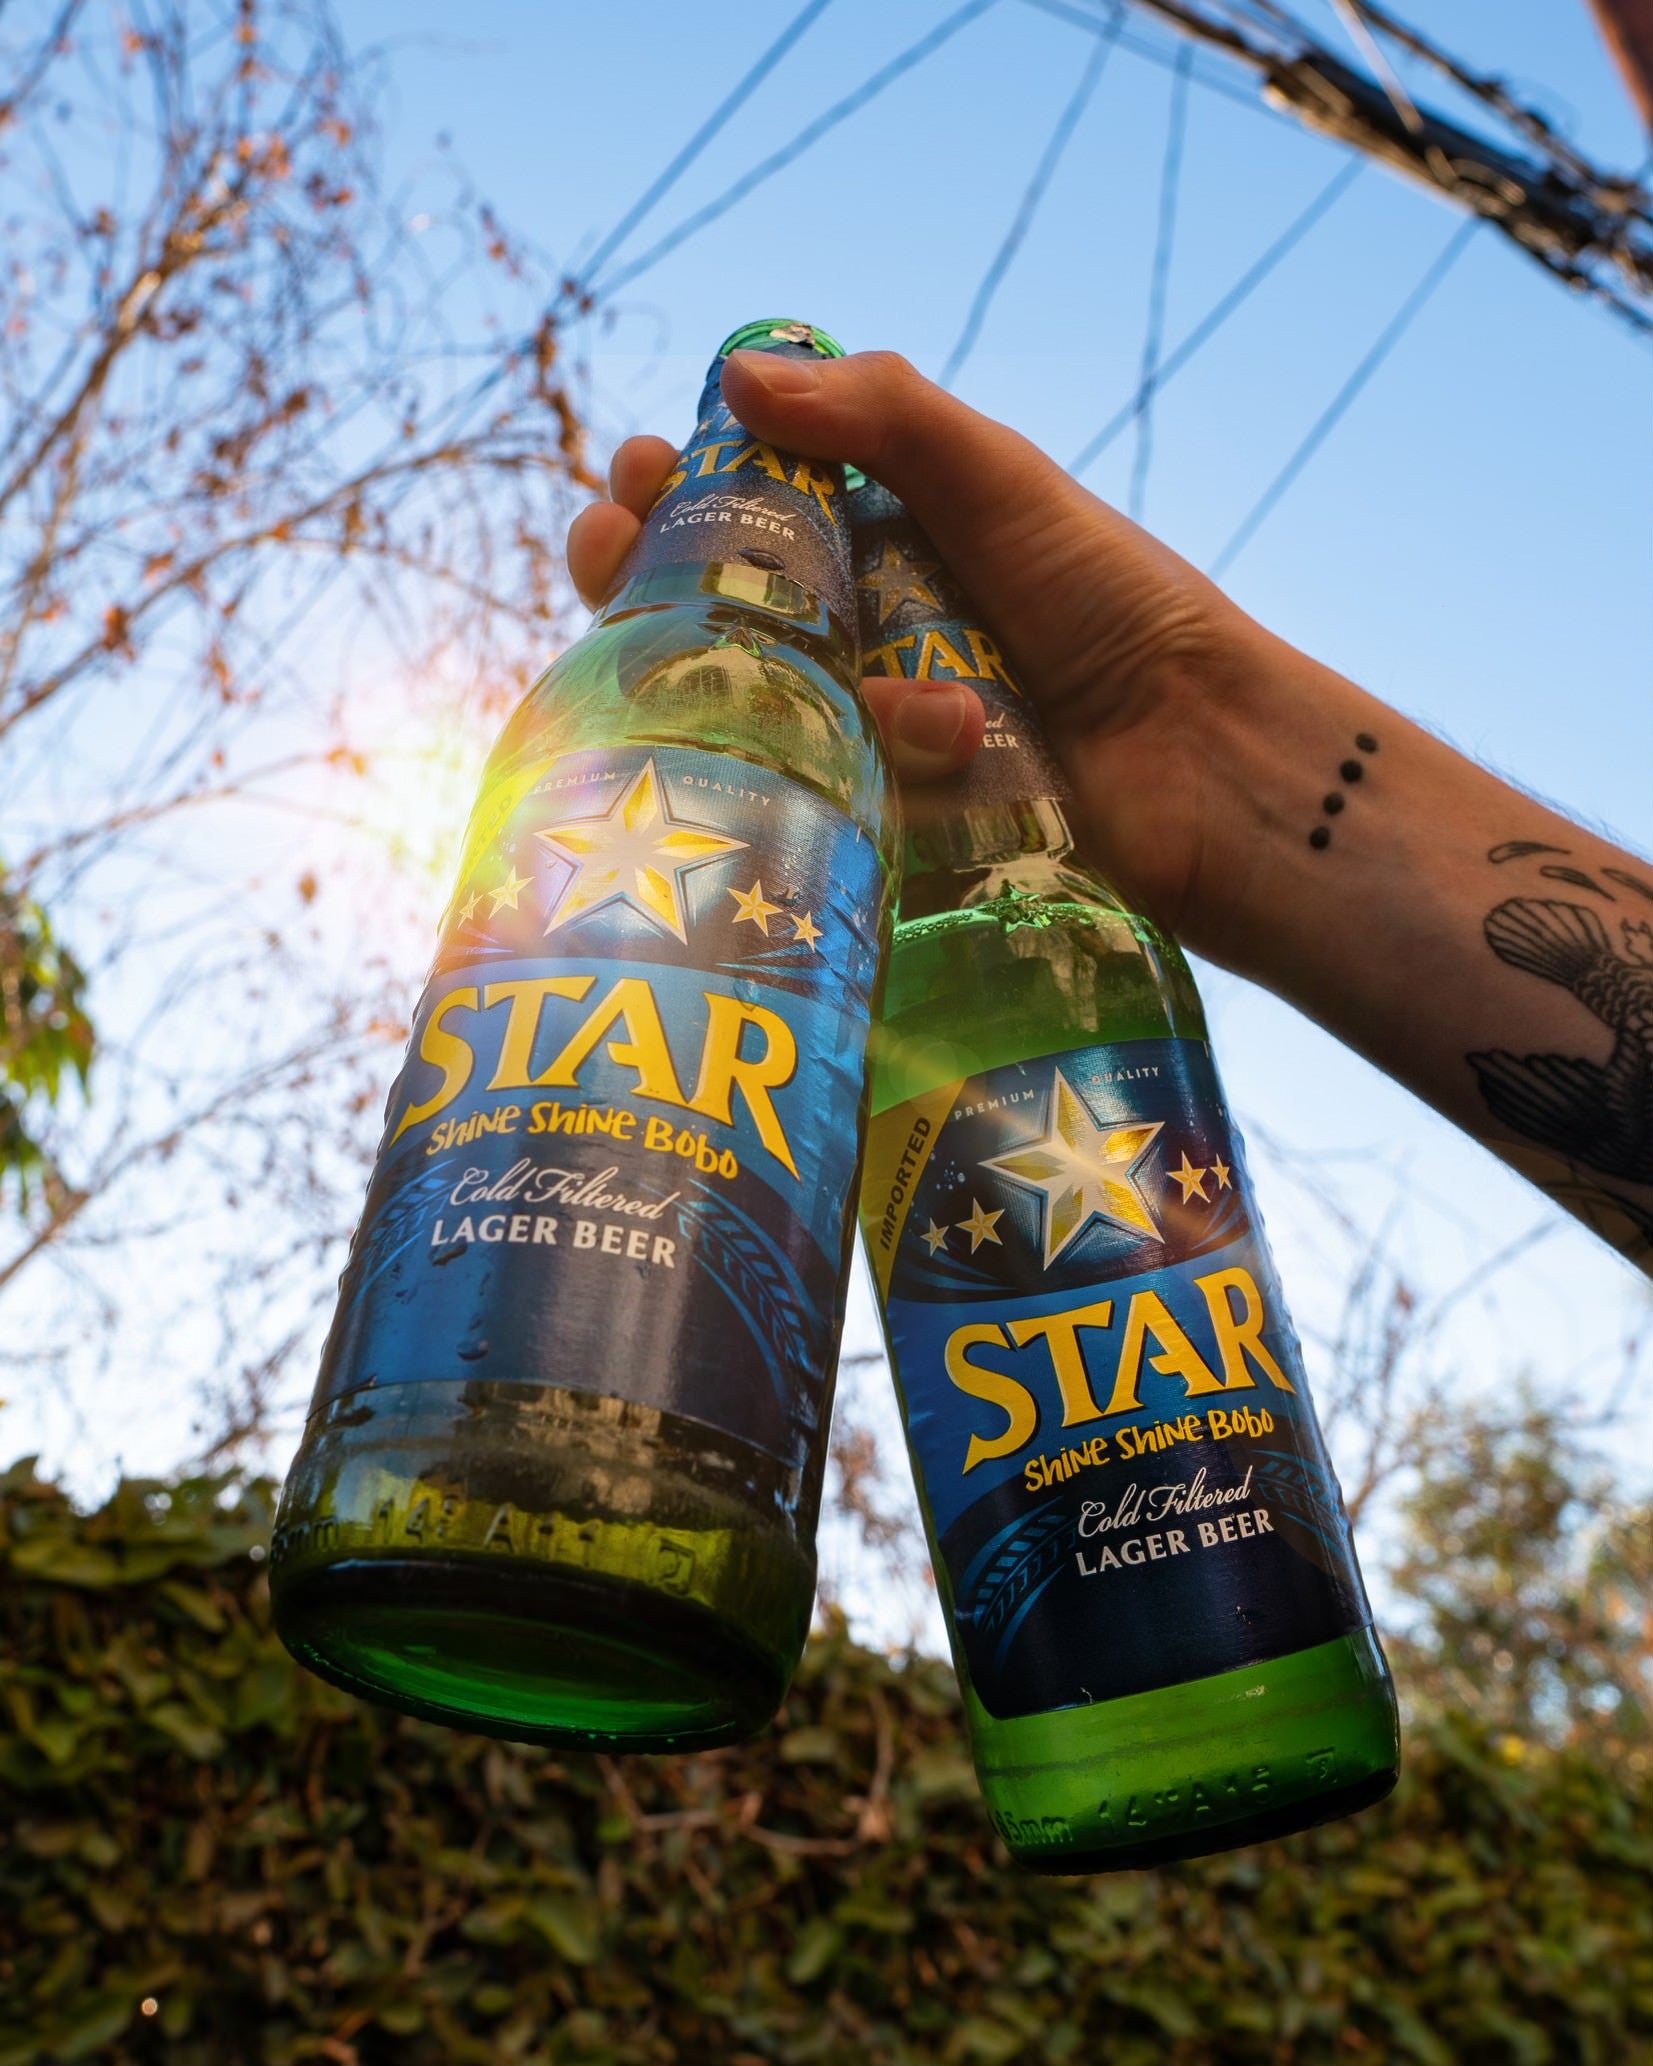 Star Finest Lager Beer 0,6l-  Nigerianisches Lager mit 5,1 % Alc.